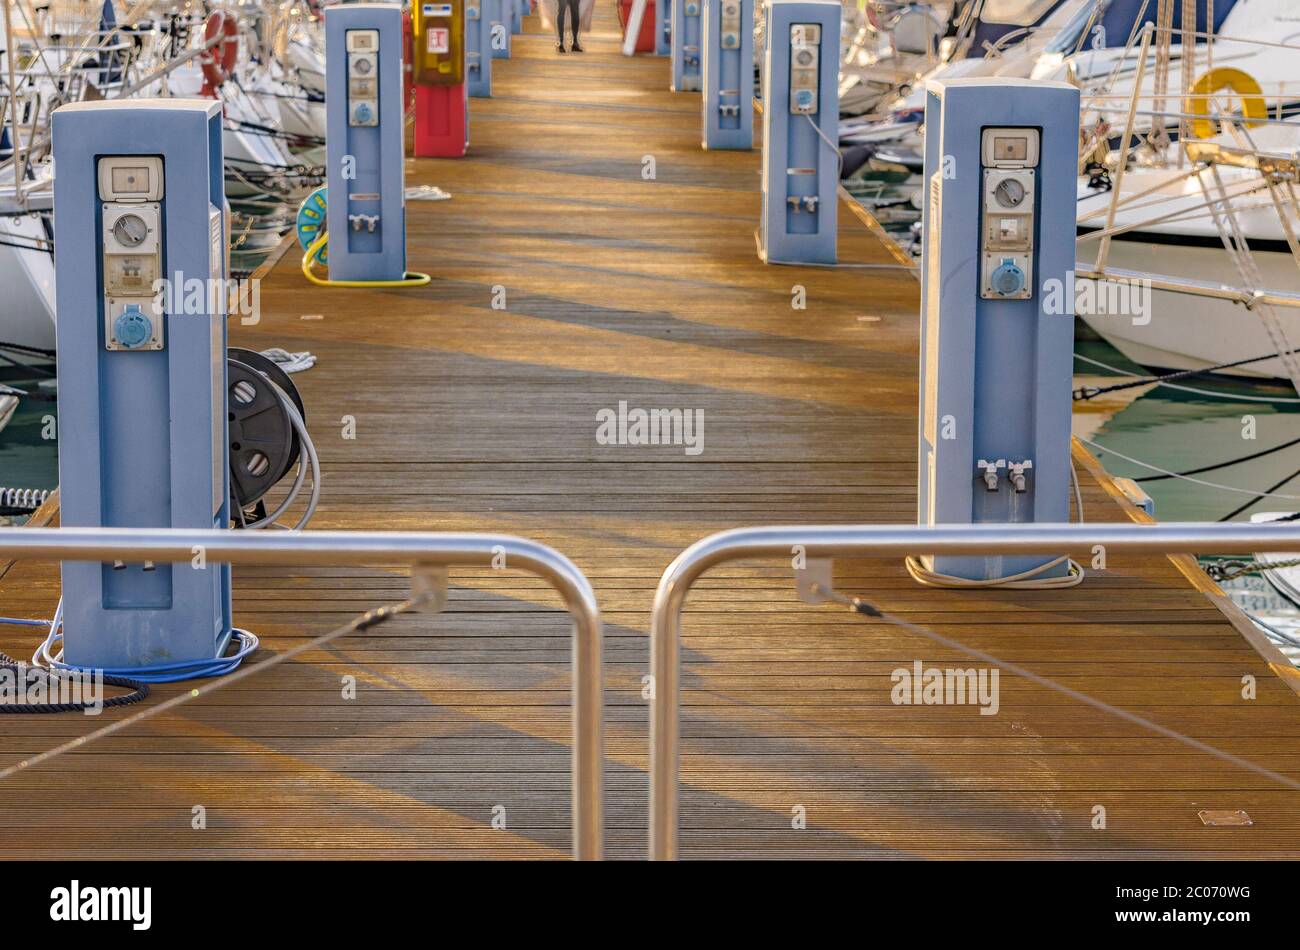 Elektrische Ladestationen auf dem Hafenweg Stockfotografie - Alamy